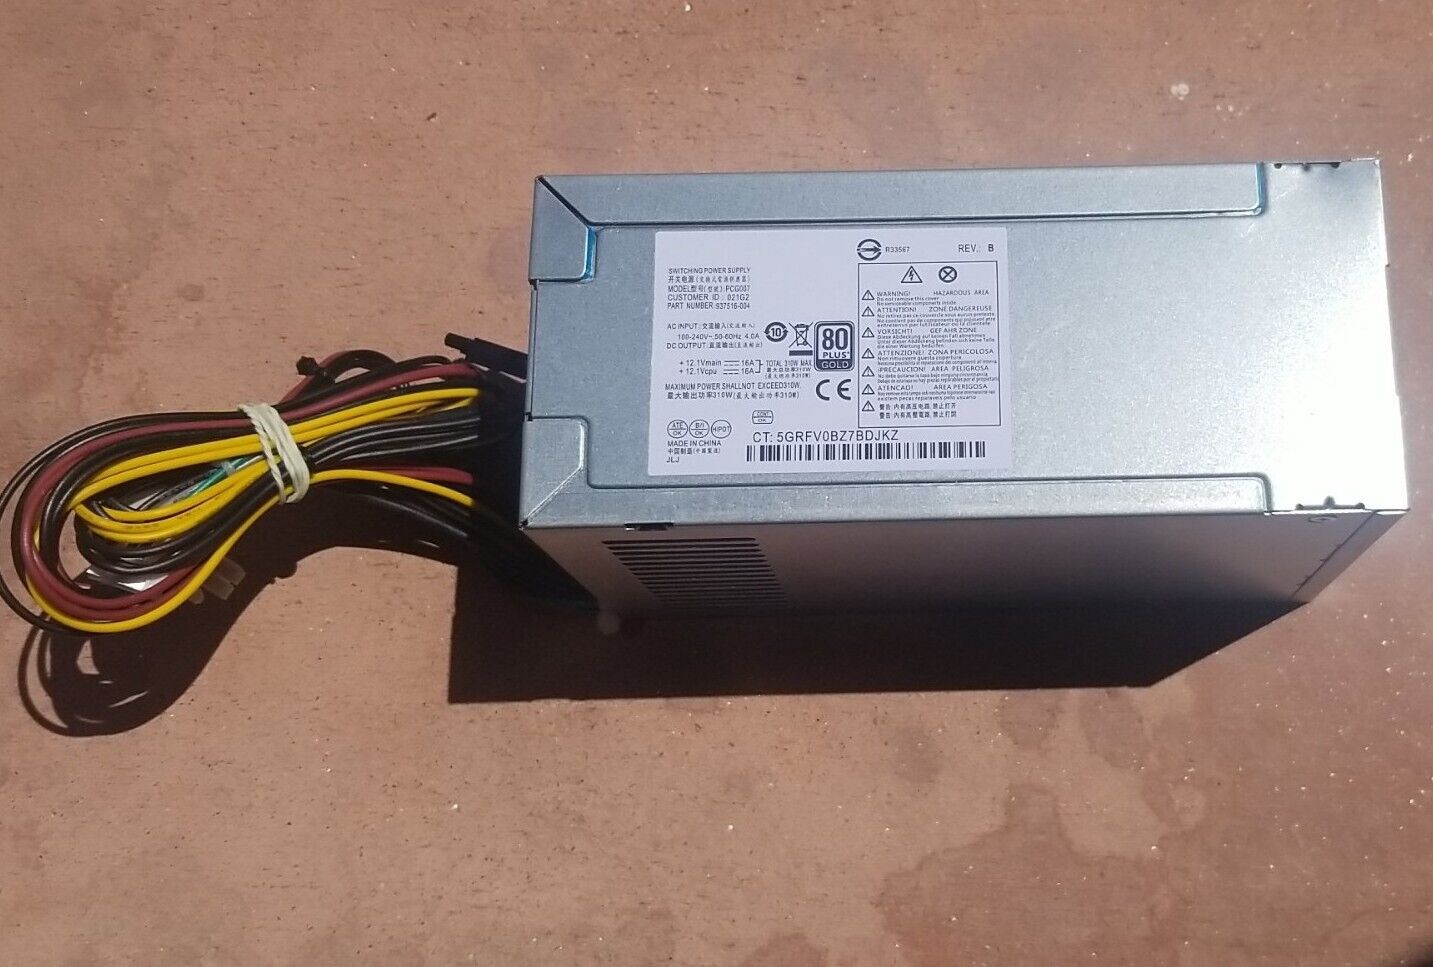 New PCG007 310W 937516-004 PSU Power Supply